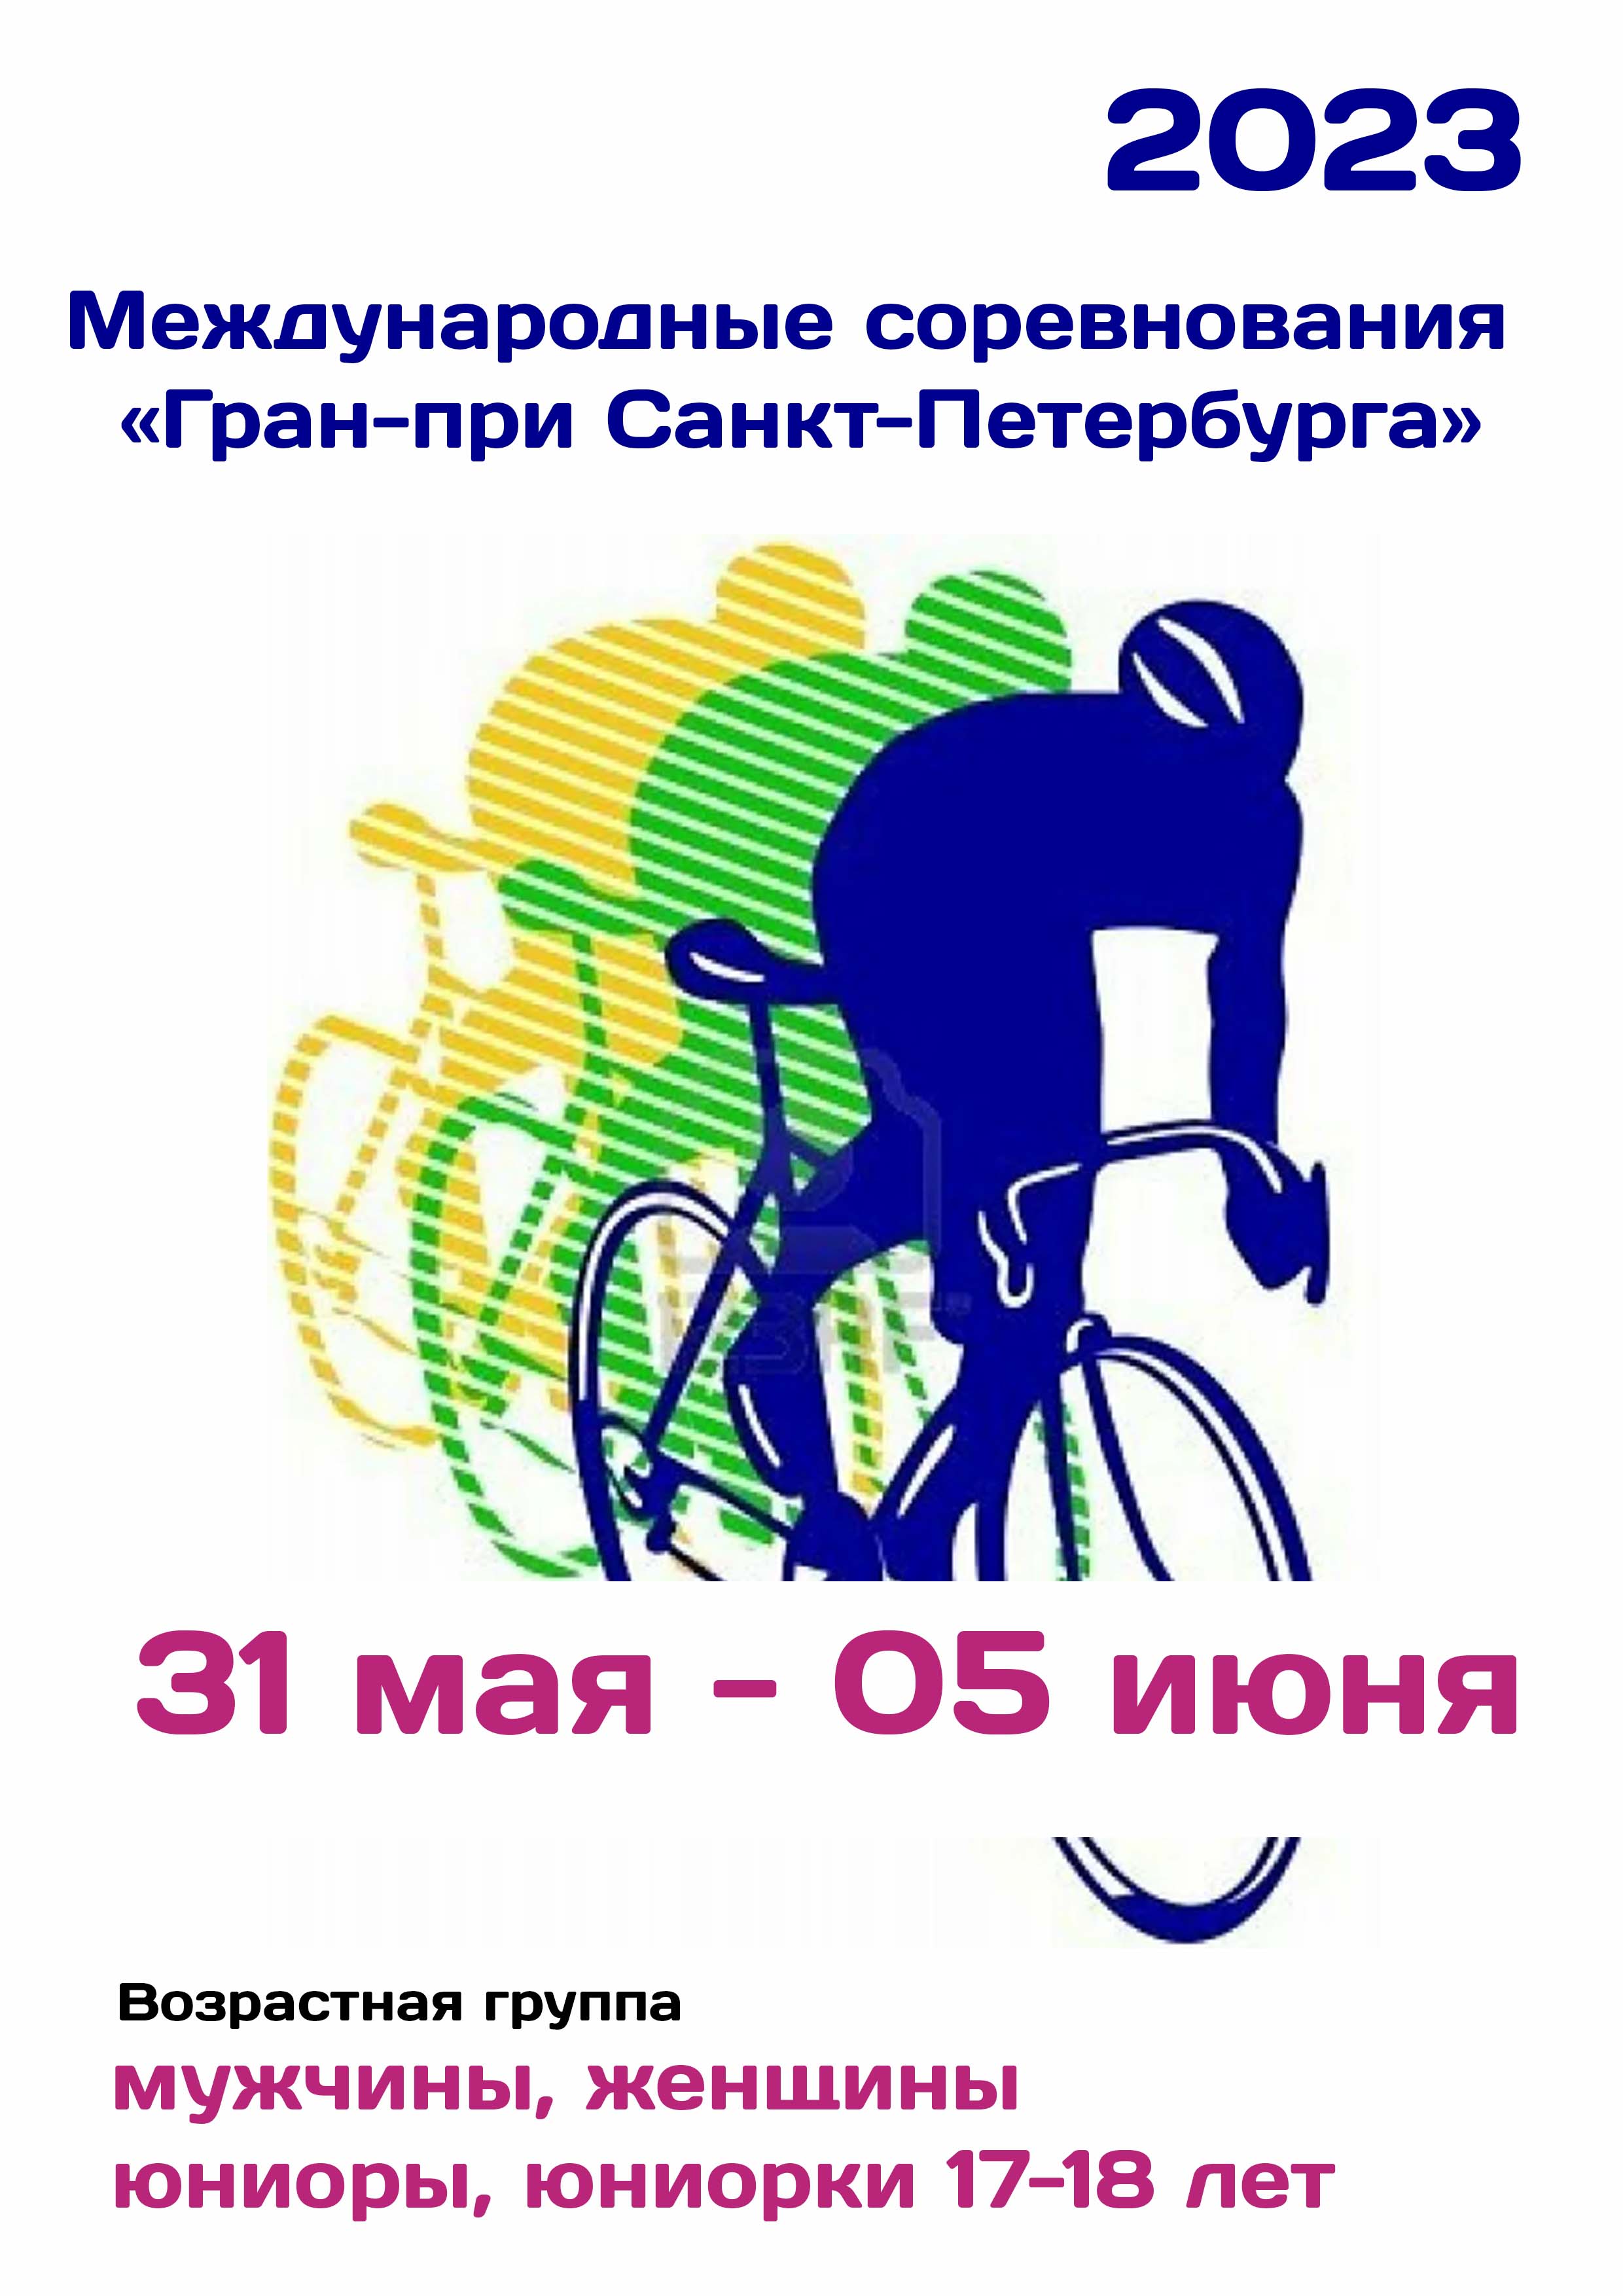 Международные соревнования «Гран-при Санкт-Петербурга»  по велоспорту 31  maio
 2023  ano
 